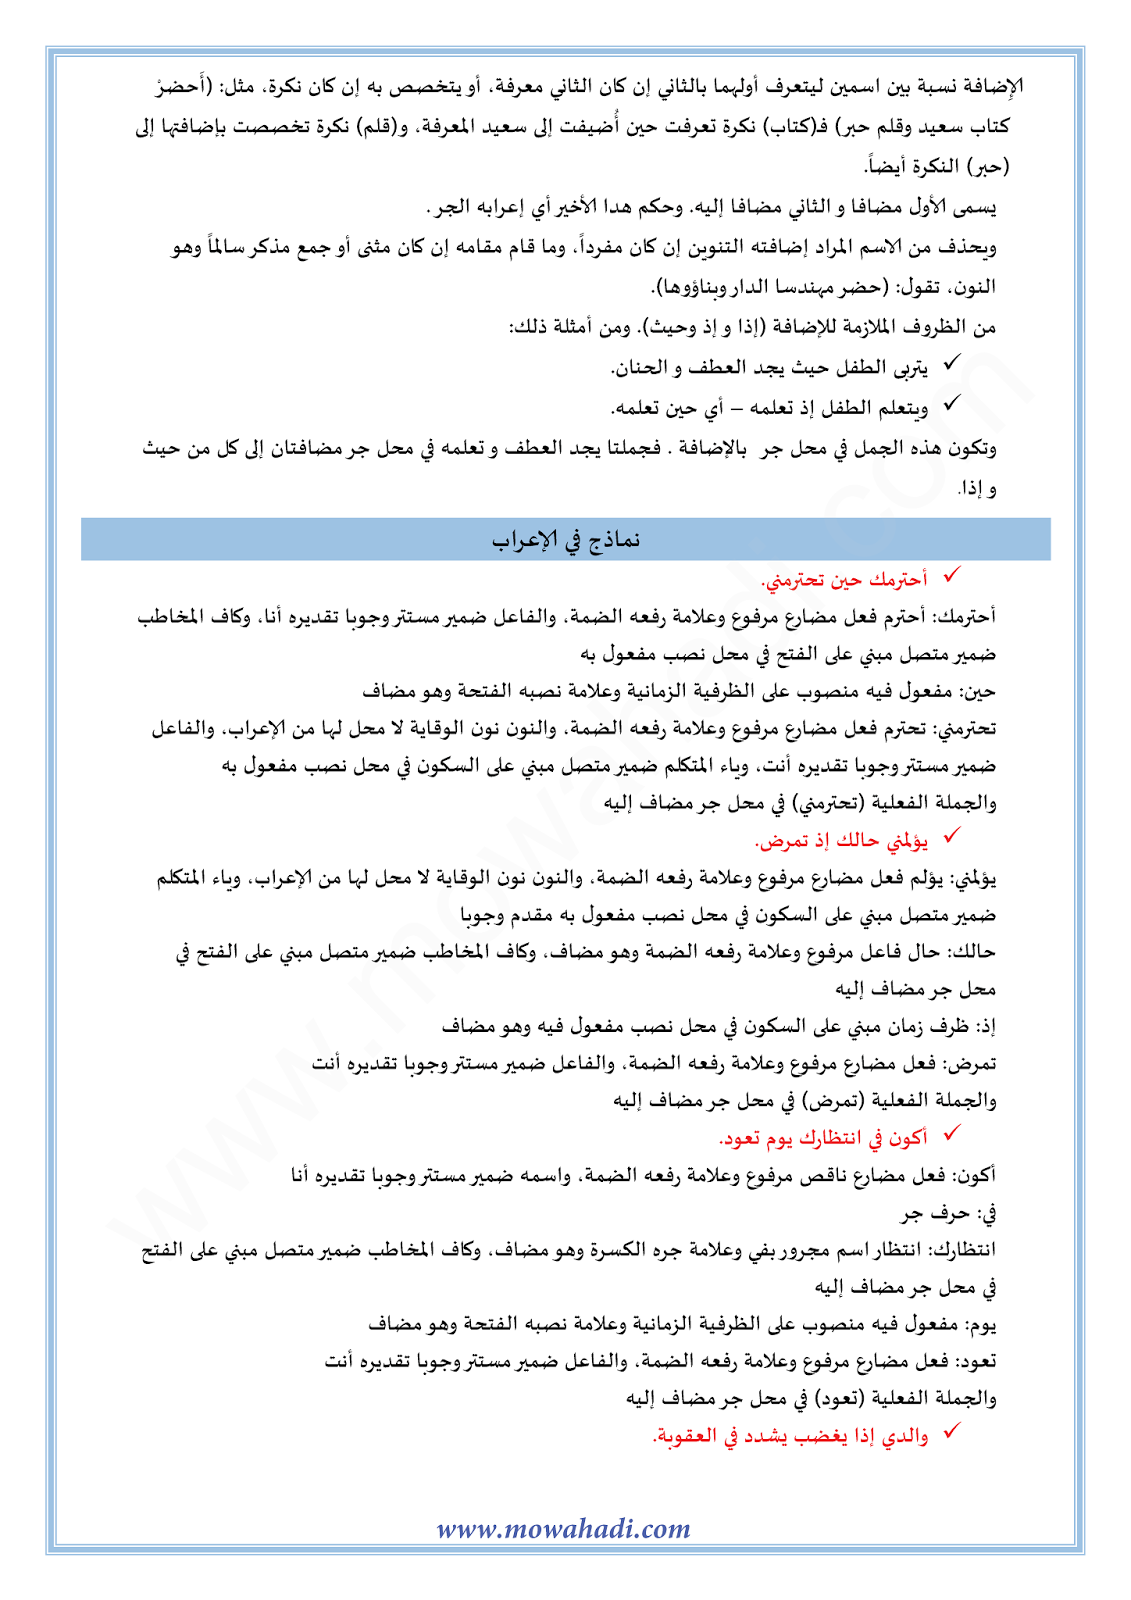 الدرس اللغوي الإضافة للسنة الثالثة اعدادي في مادة اللغة العربية 6-cours-dars-loghawi3_004